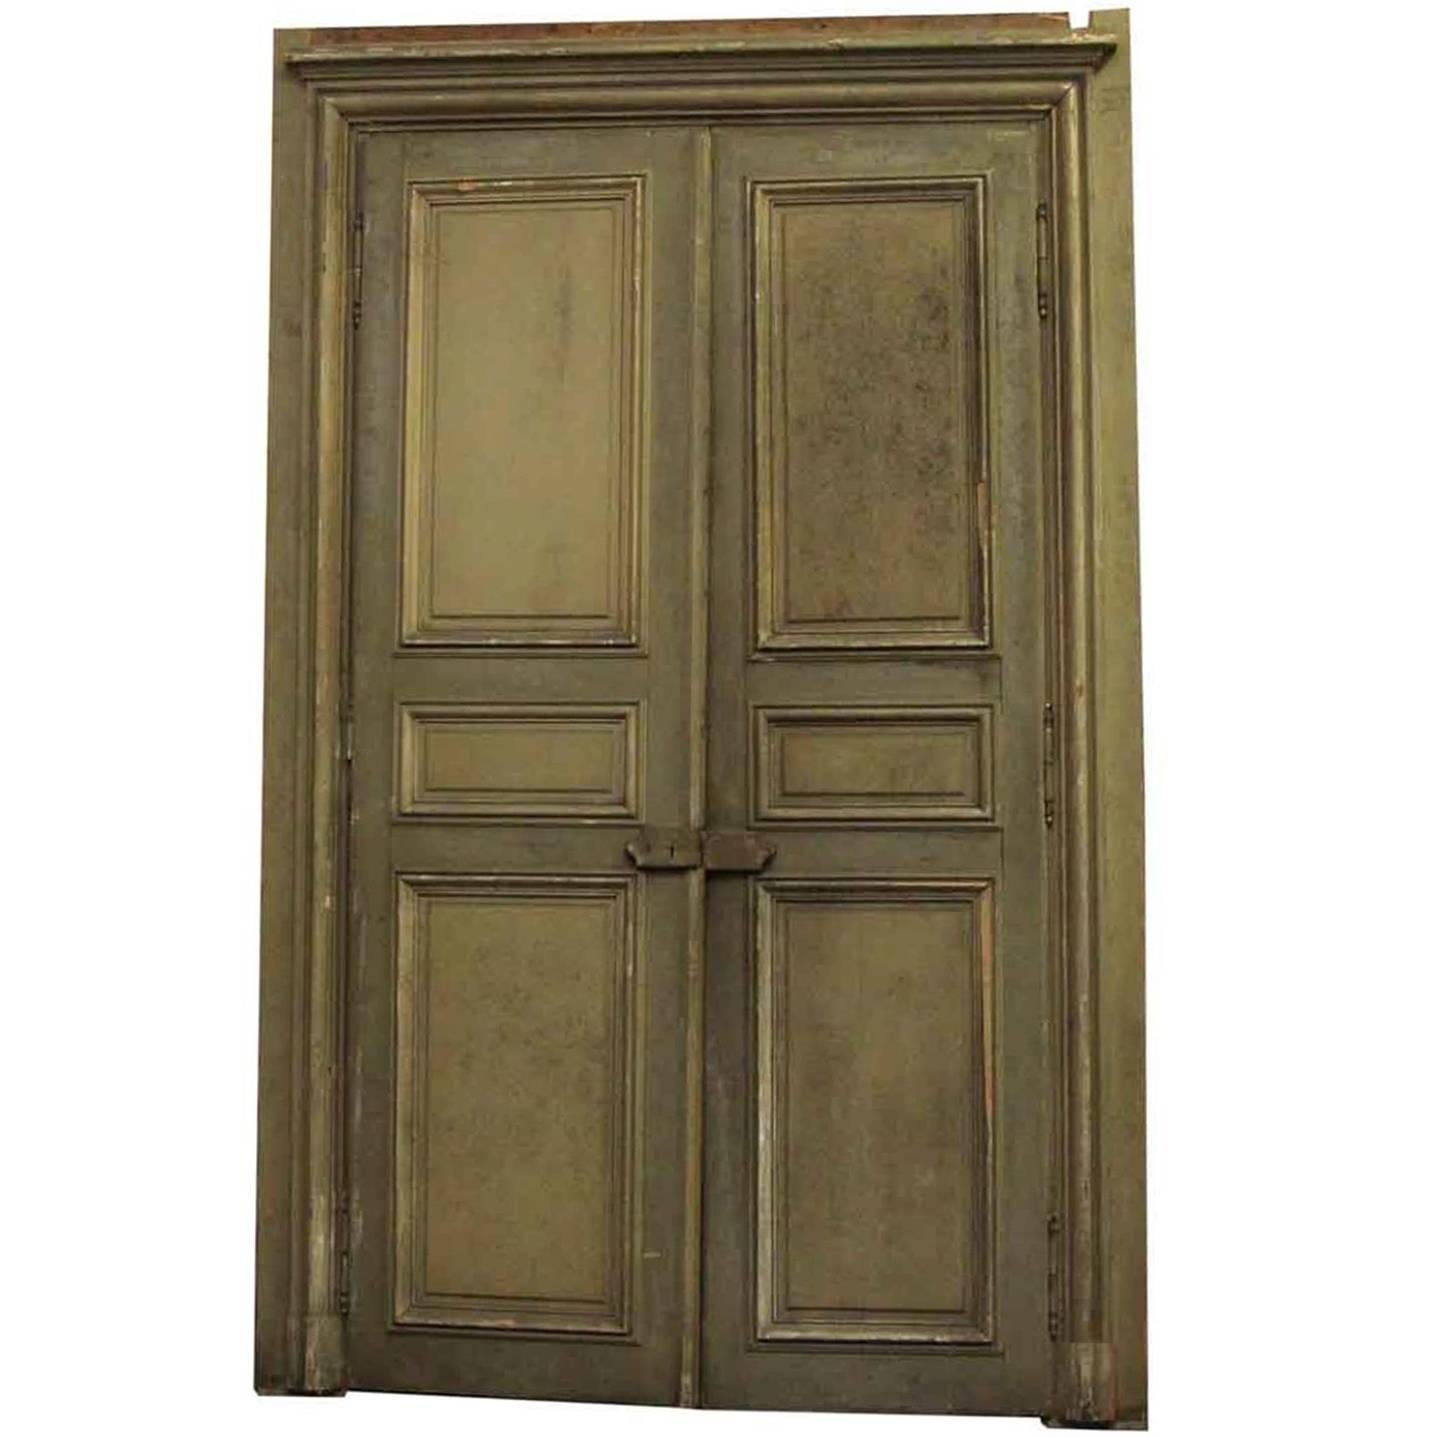 1870s French Provincial Oversized Doors with Door Janbs